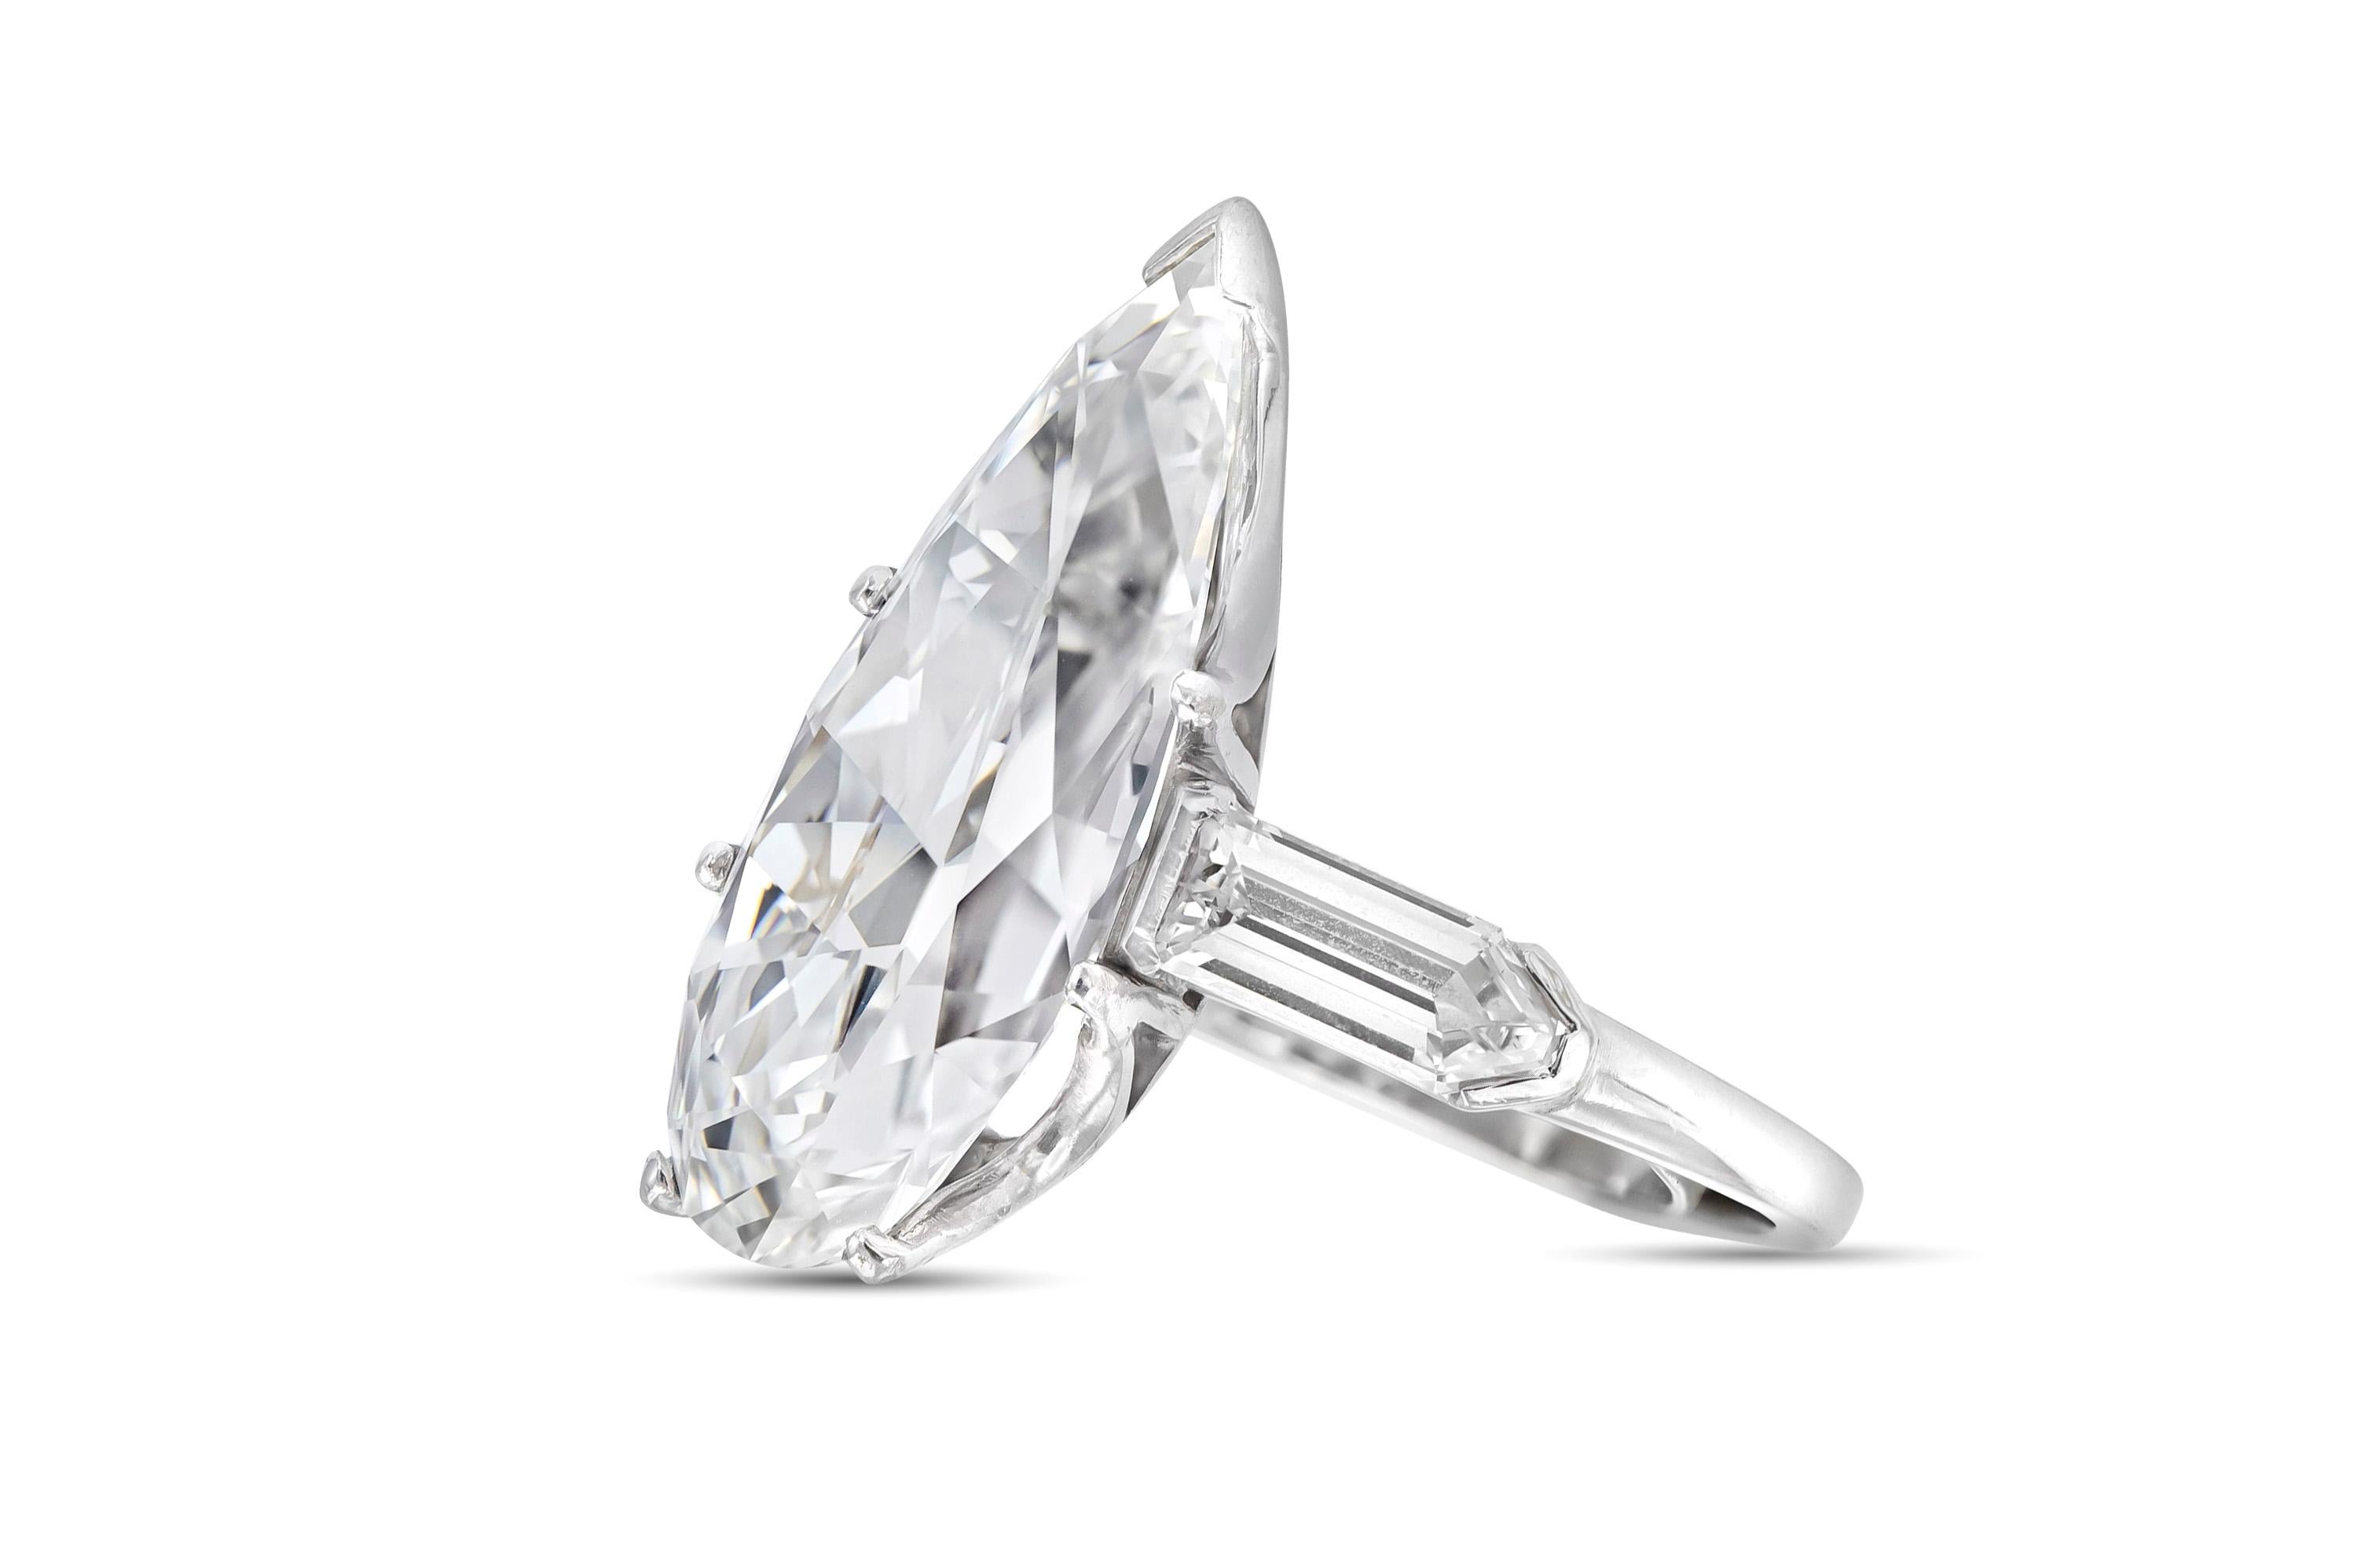 Fein gearbeitet aus Platin mit einem GIA-zertifizierten birnenförmigen Diamanten von 10,67 Karat.
Farbe G, Reinheit VS1
GIA #1226180588
Der Ring ist auf beiden Seiten mit Diamanten im Schildschliff besetzt.